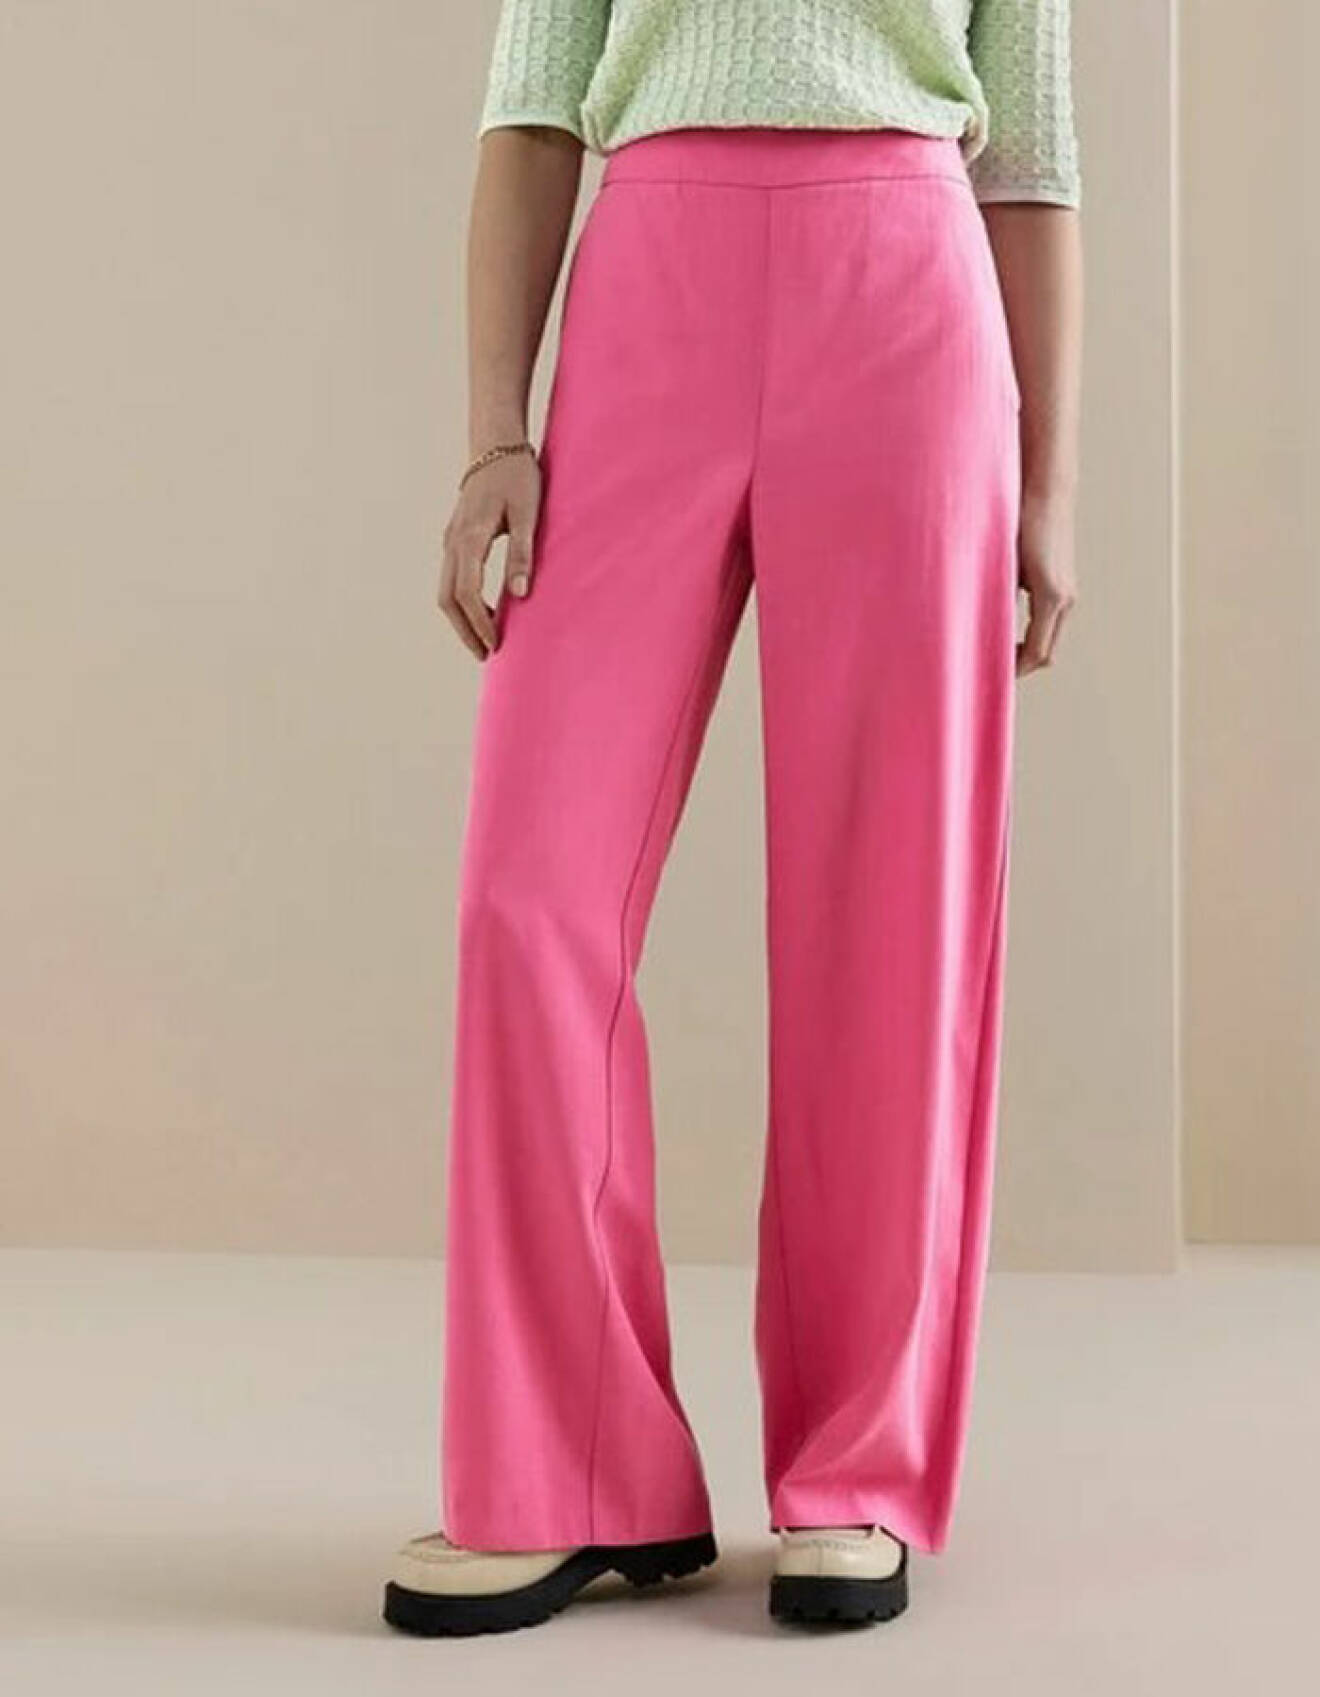 snygg outfit i rött och rosa – rosa byxor från Lindex